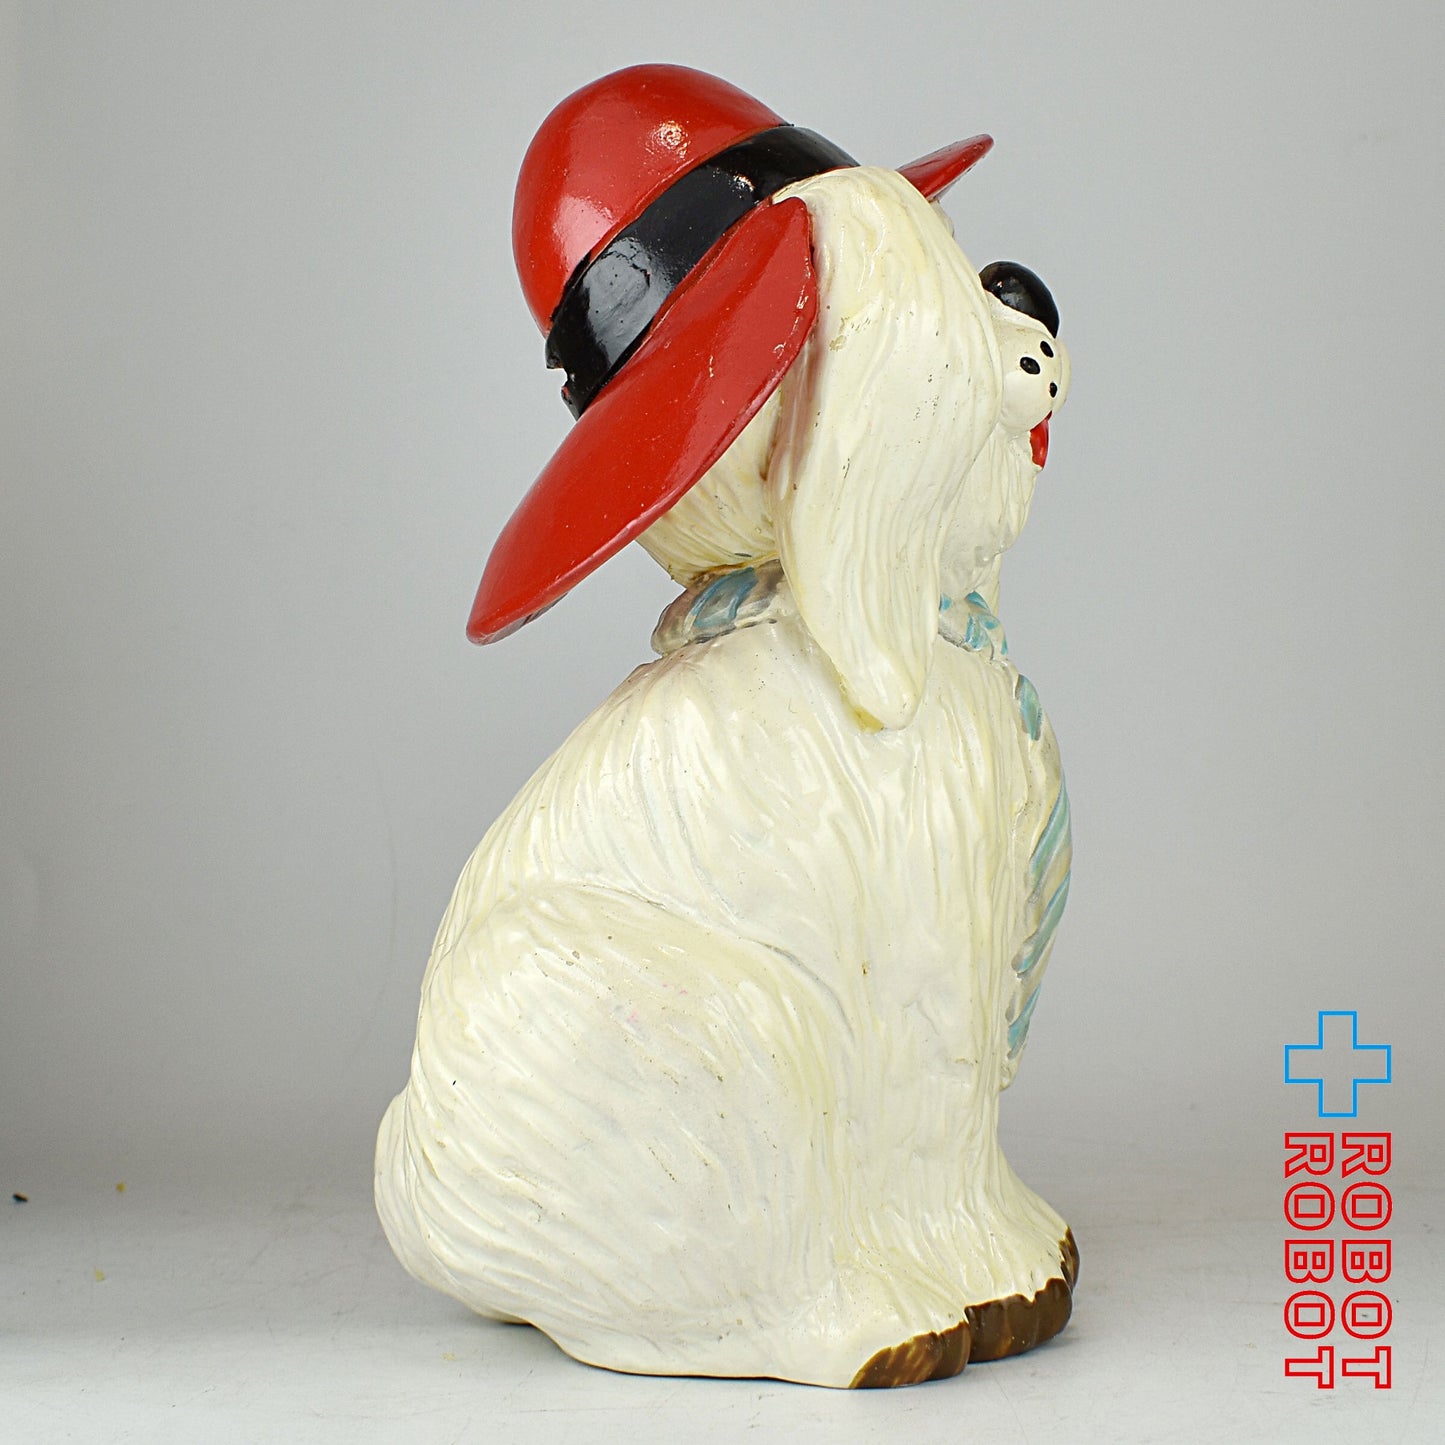 赤い帽子とネクタイの犬 コッカースパニエル ソフビ貯金箱 1983